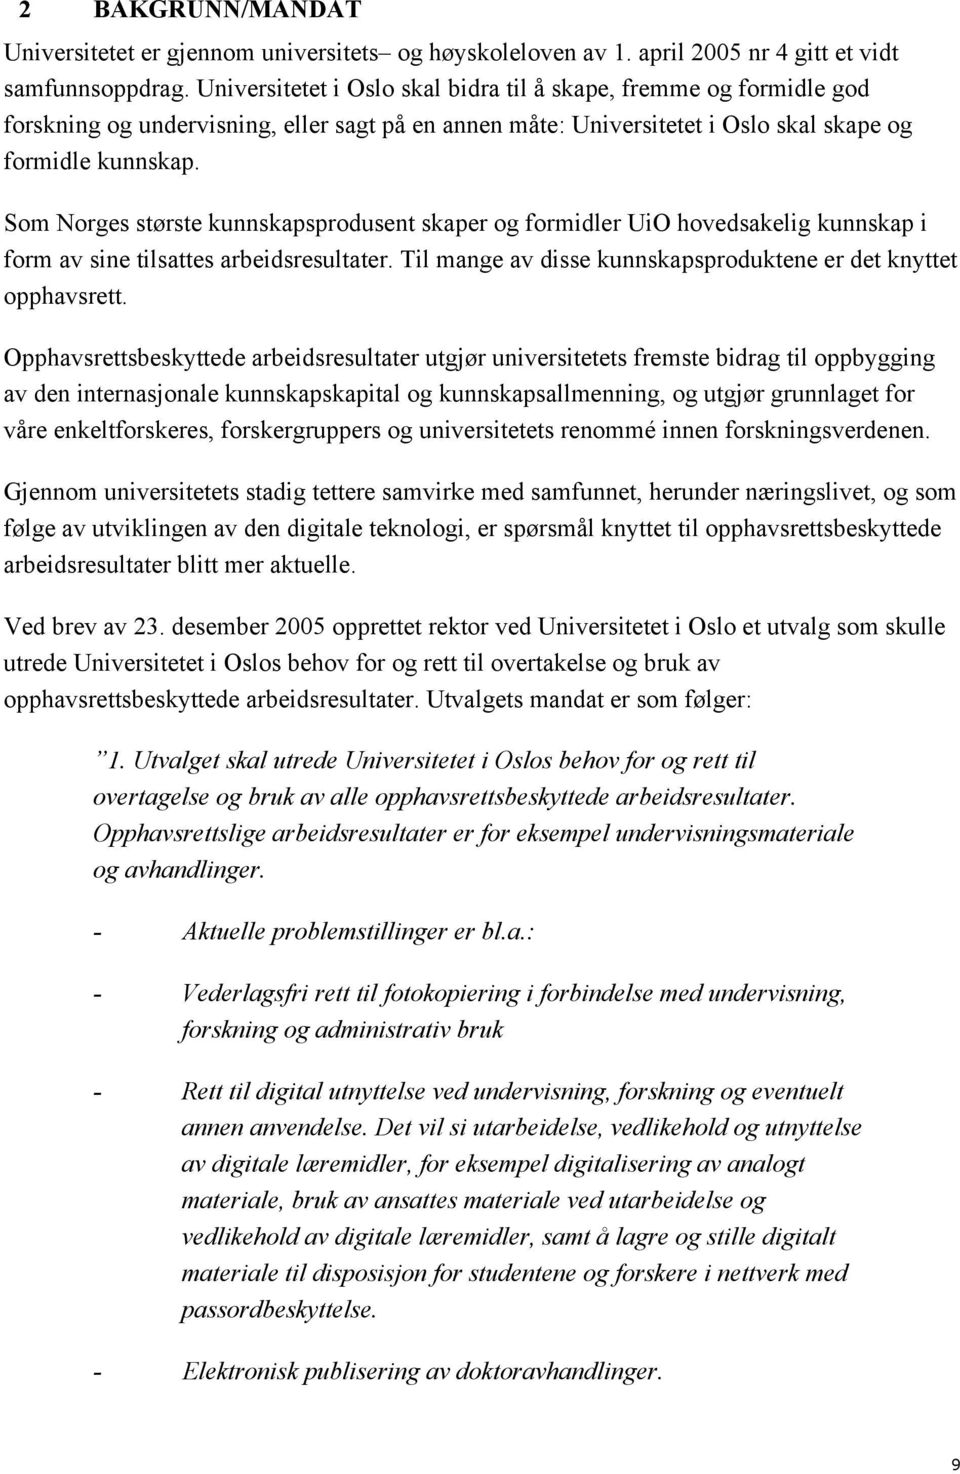 Som Norges største kunnskapsprodusent skaper og formidler UiO hovedsakelig kunnskap i form av sine tilsattes arbeidsresultater. Til mange av disse kunnskapsproduktene er det knyttet opphavsrett.